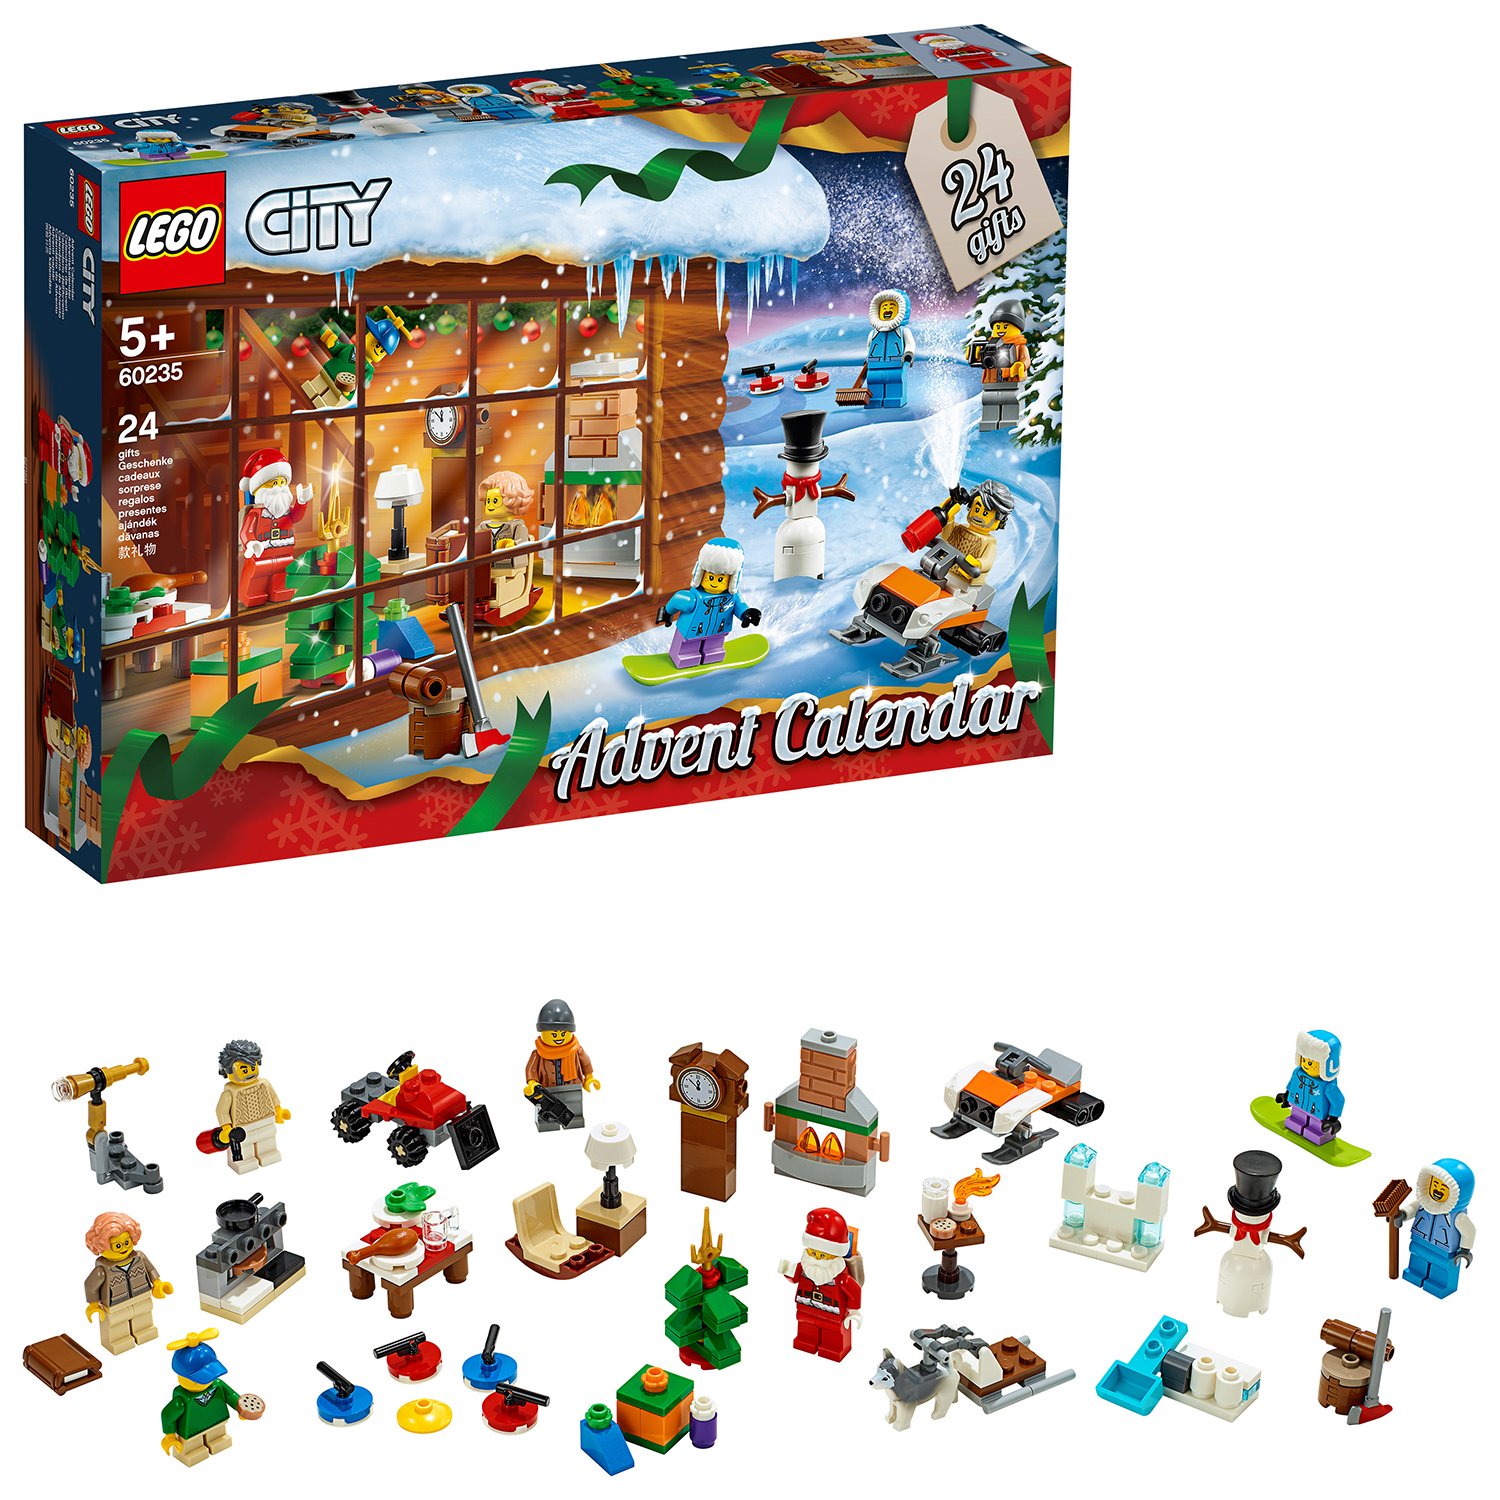 LEGO City Advent Calendar Building Set - 60235